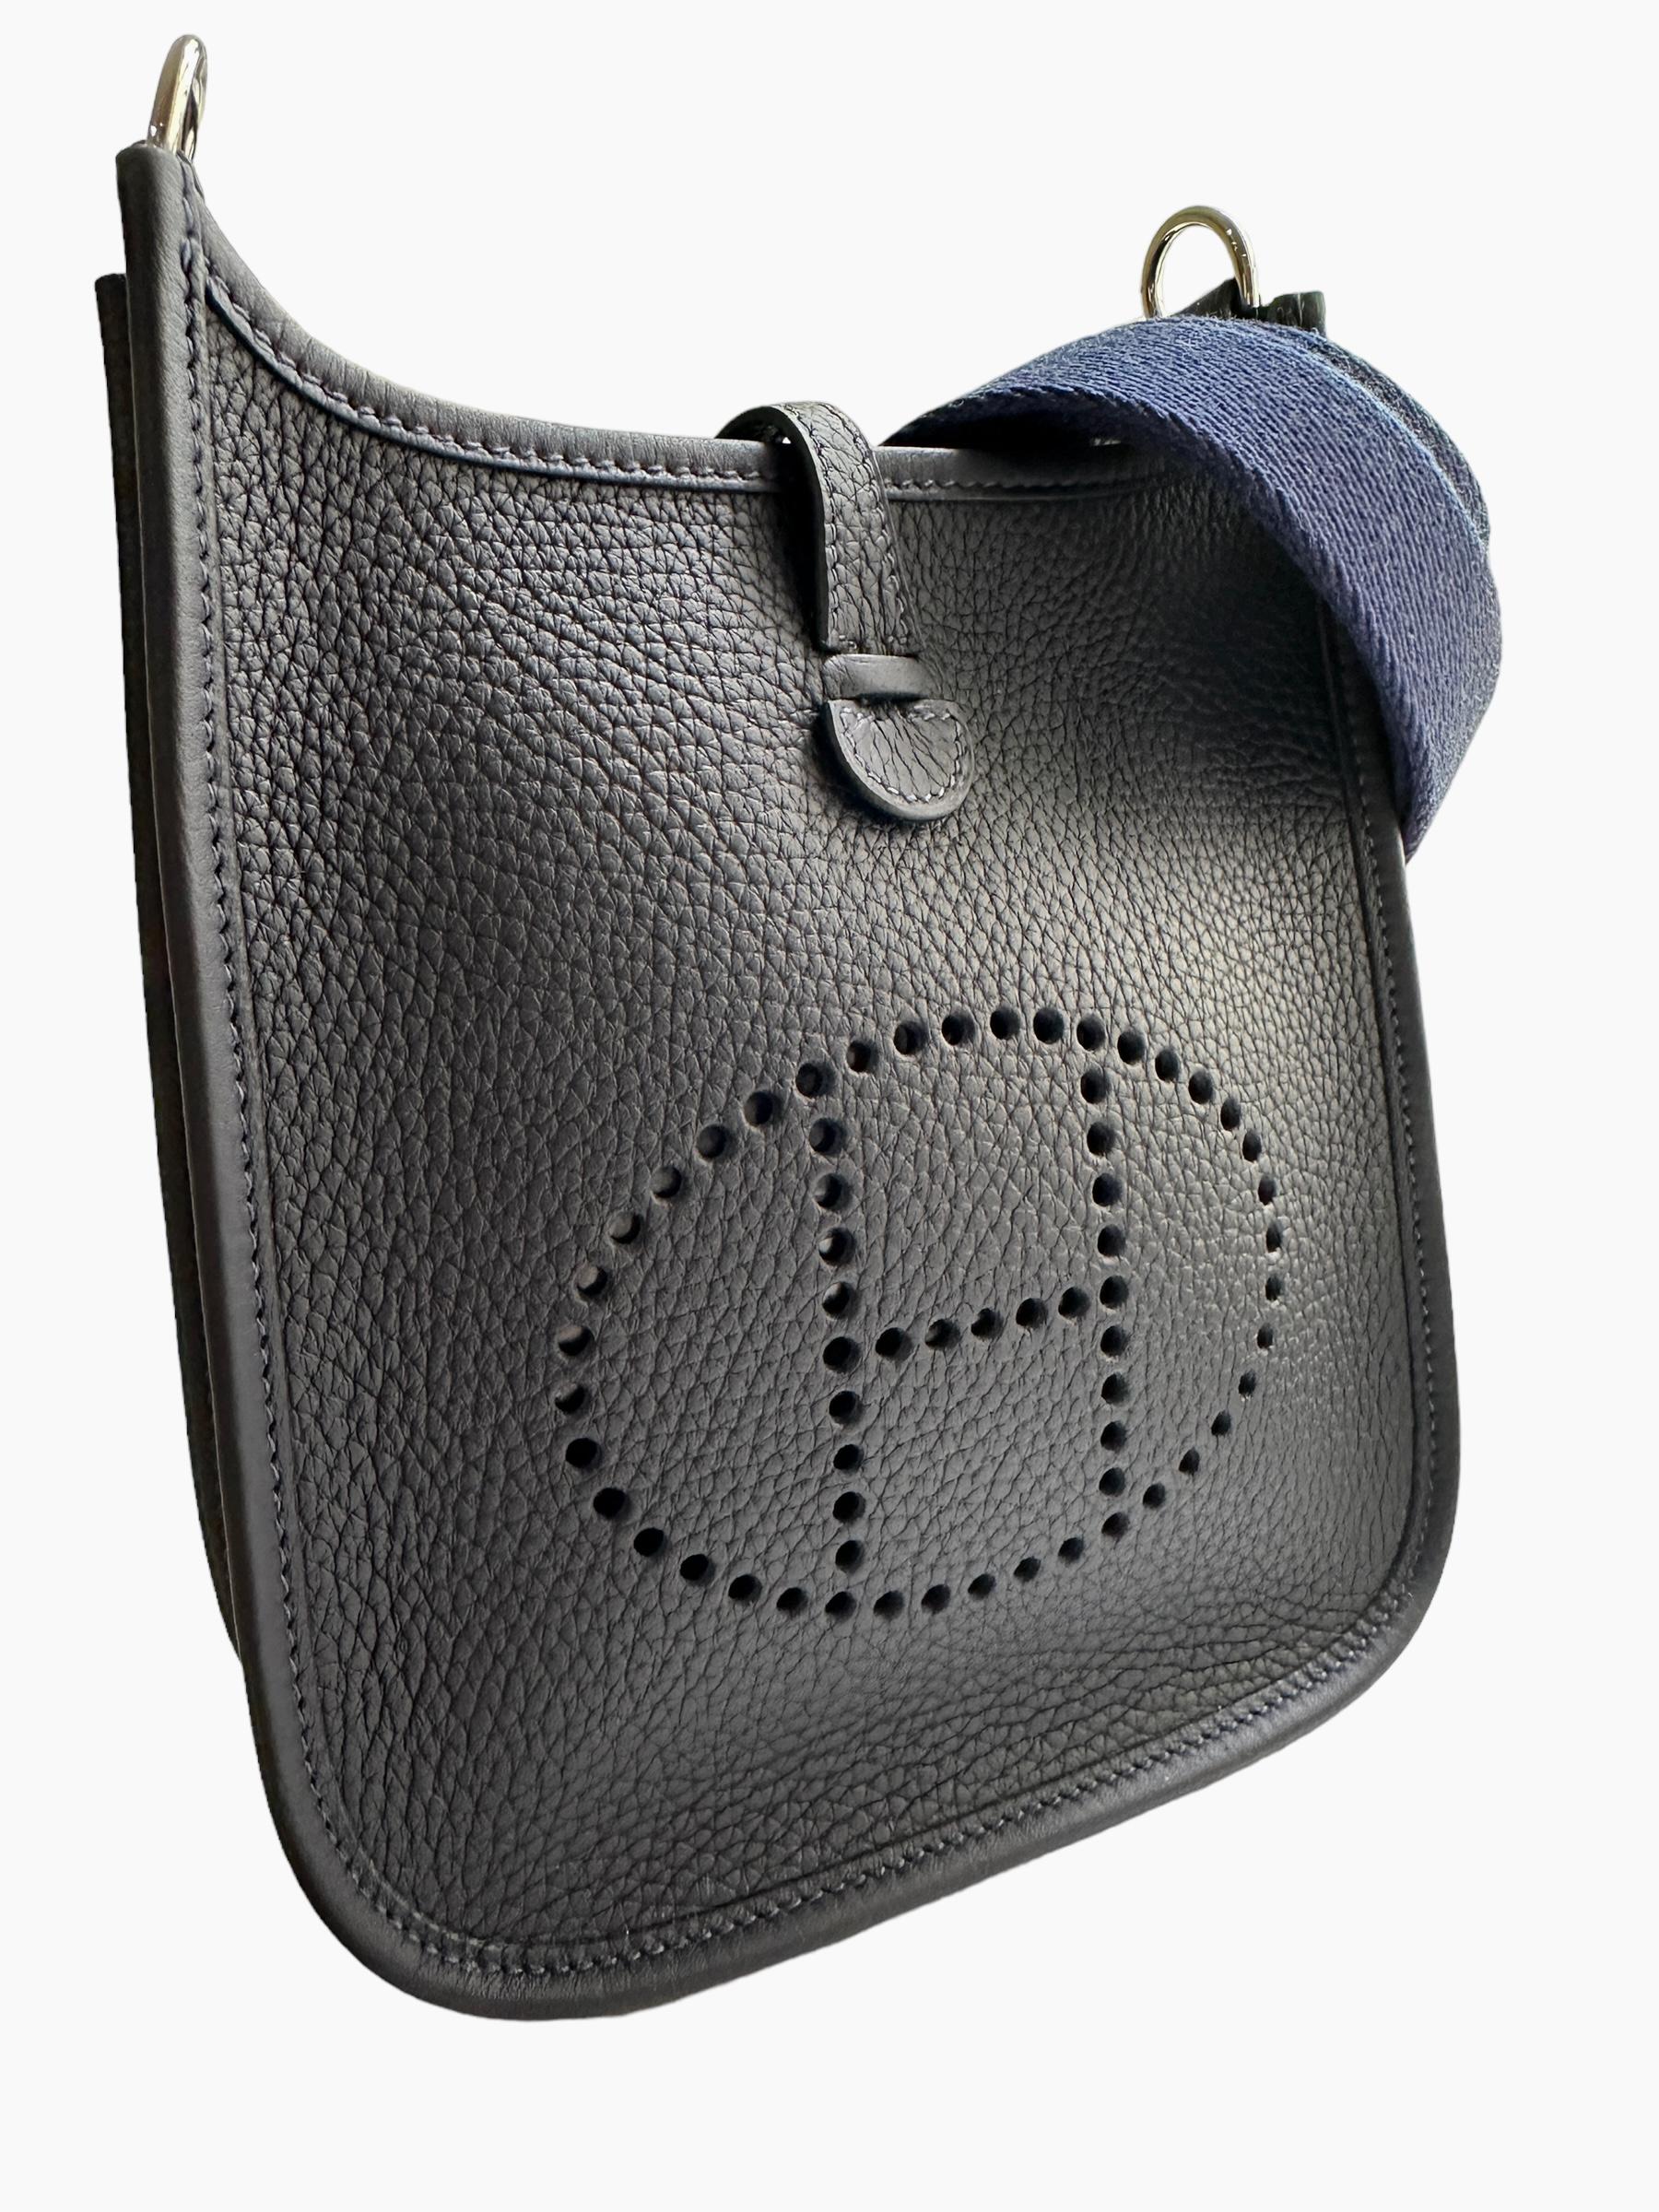 Hermès Caban Evelyne 16 TPM Tasche Handtasche Blau Saphire Strap für Damen oder Herren